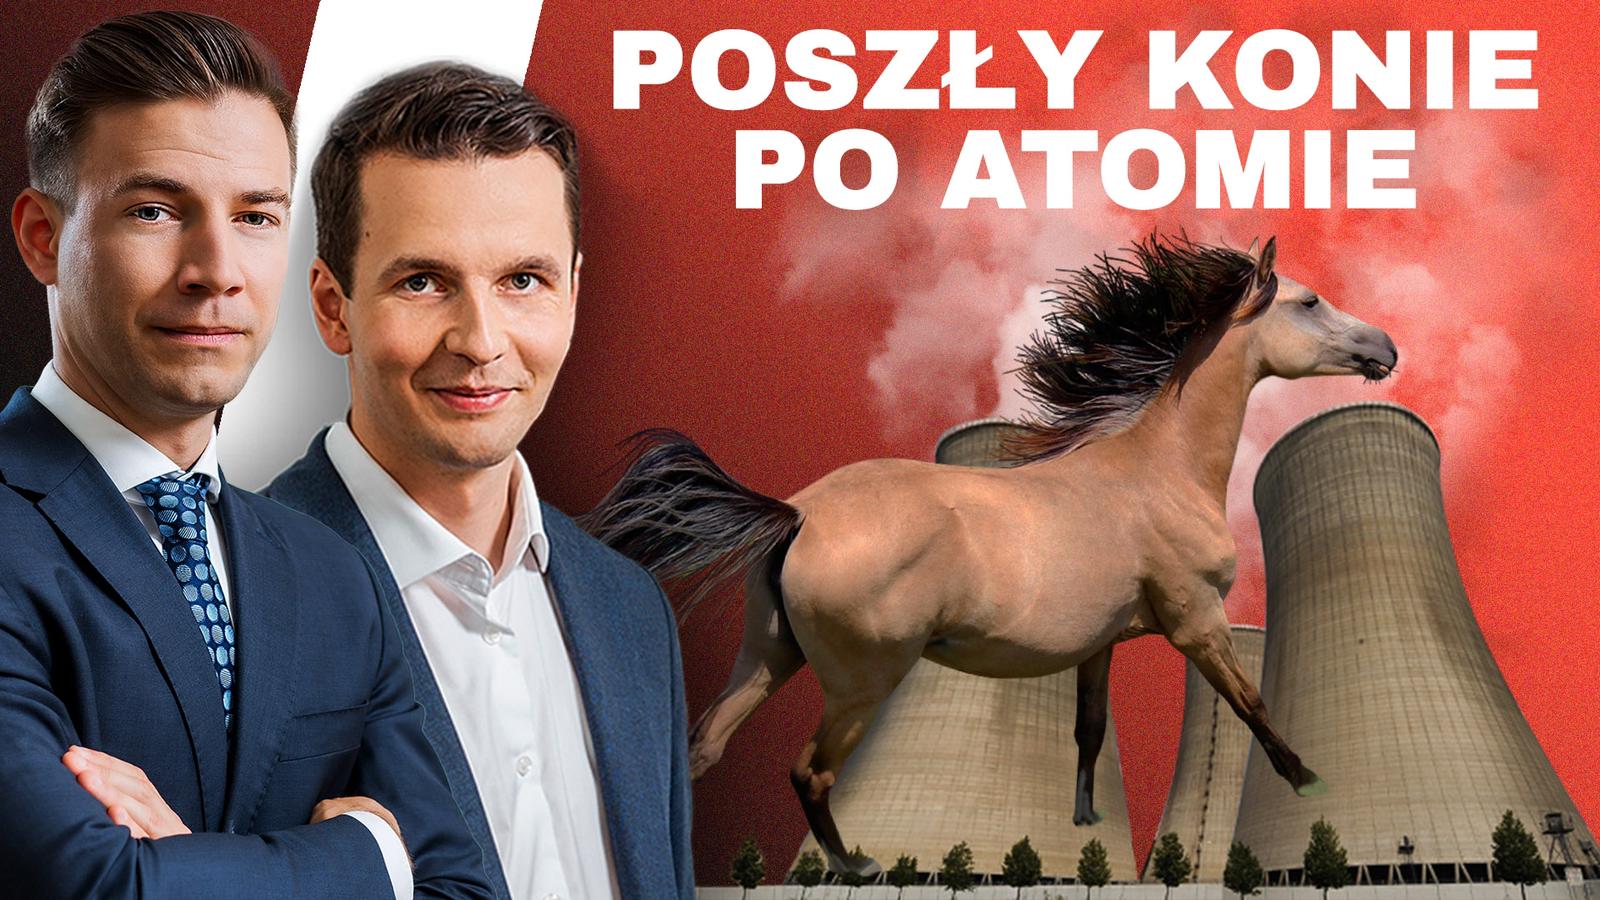 Poszły konie po atomie. Grafika: Mikołaj Teperek.